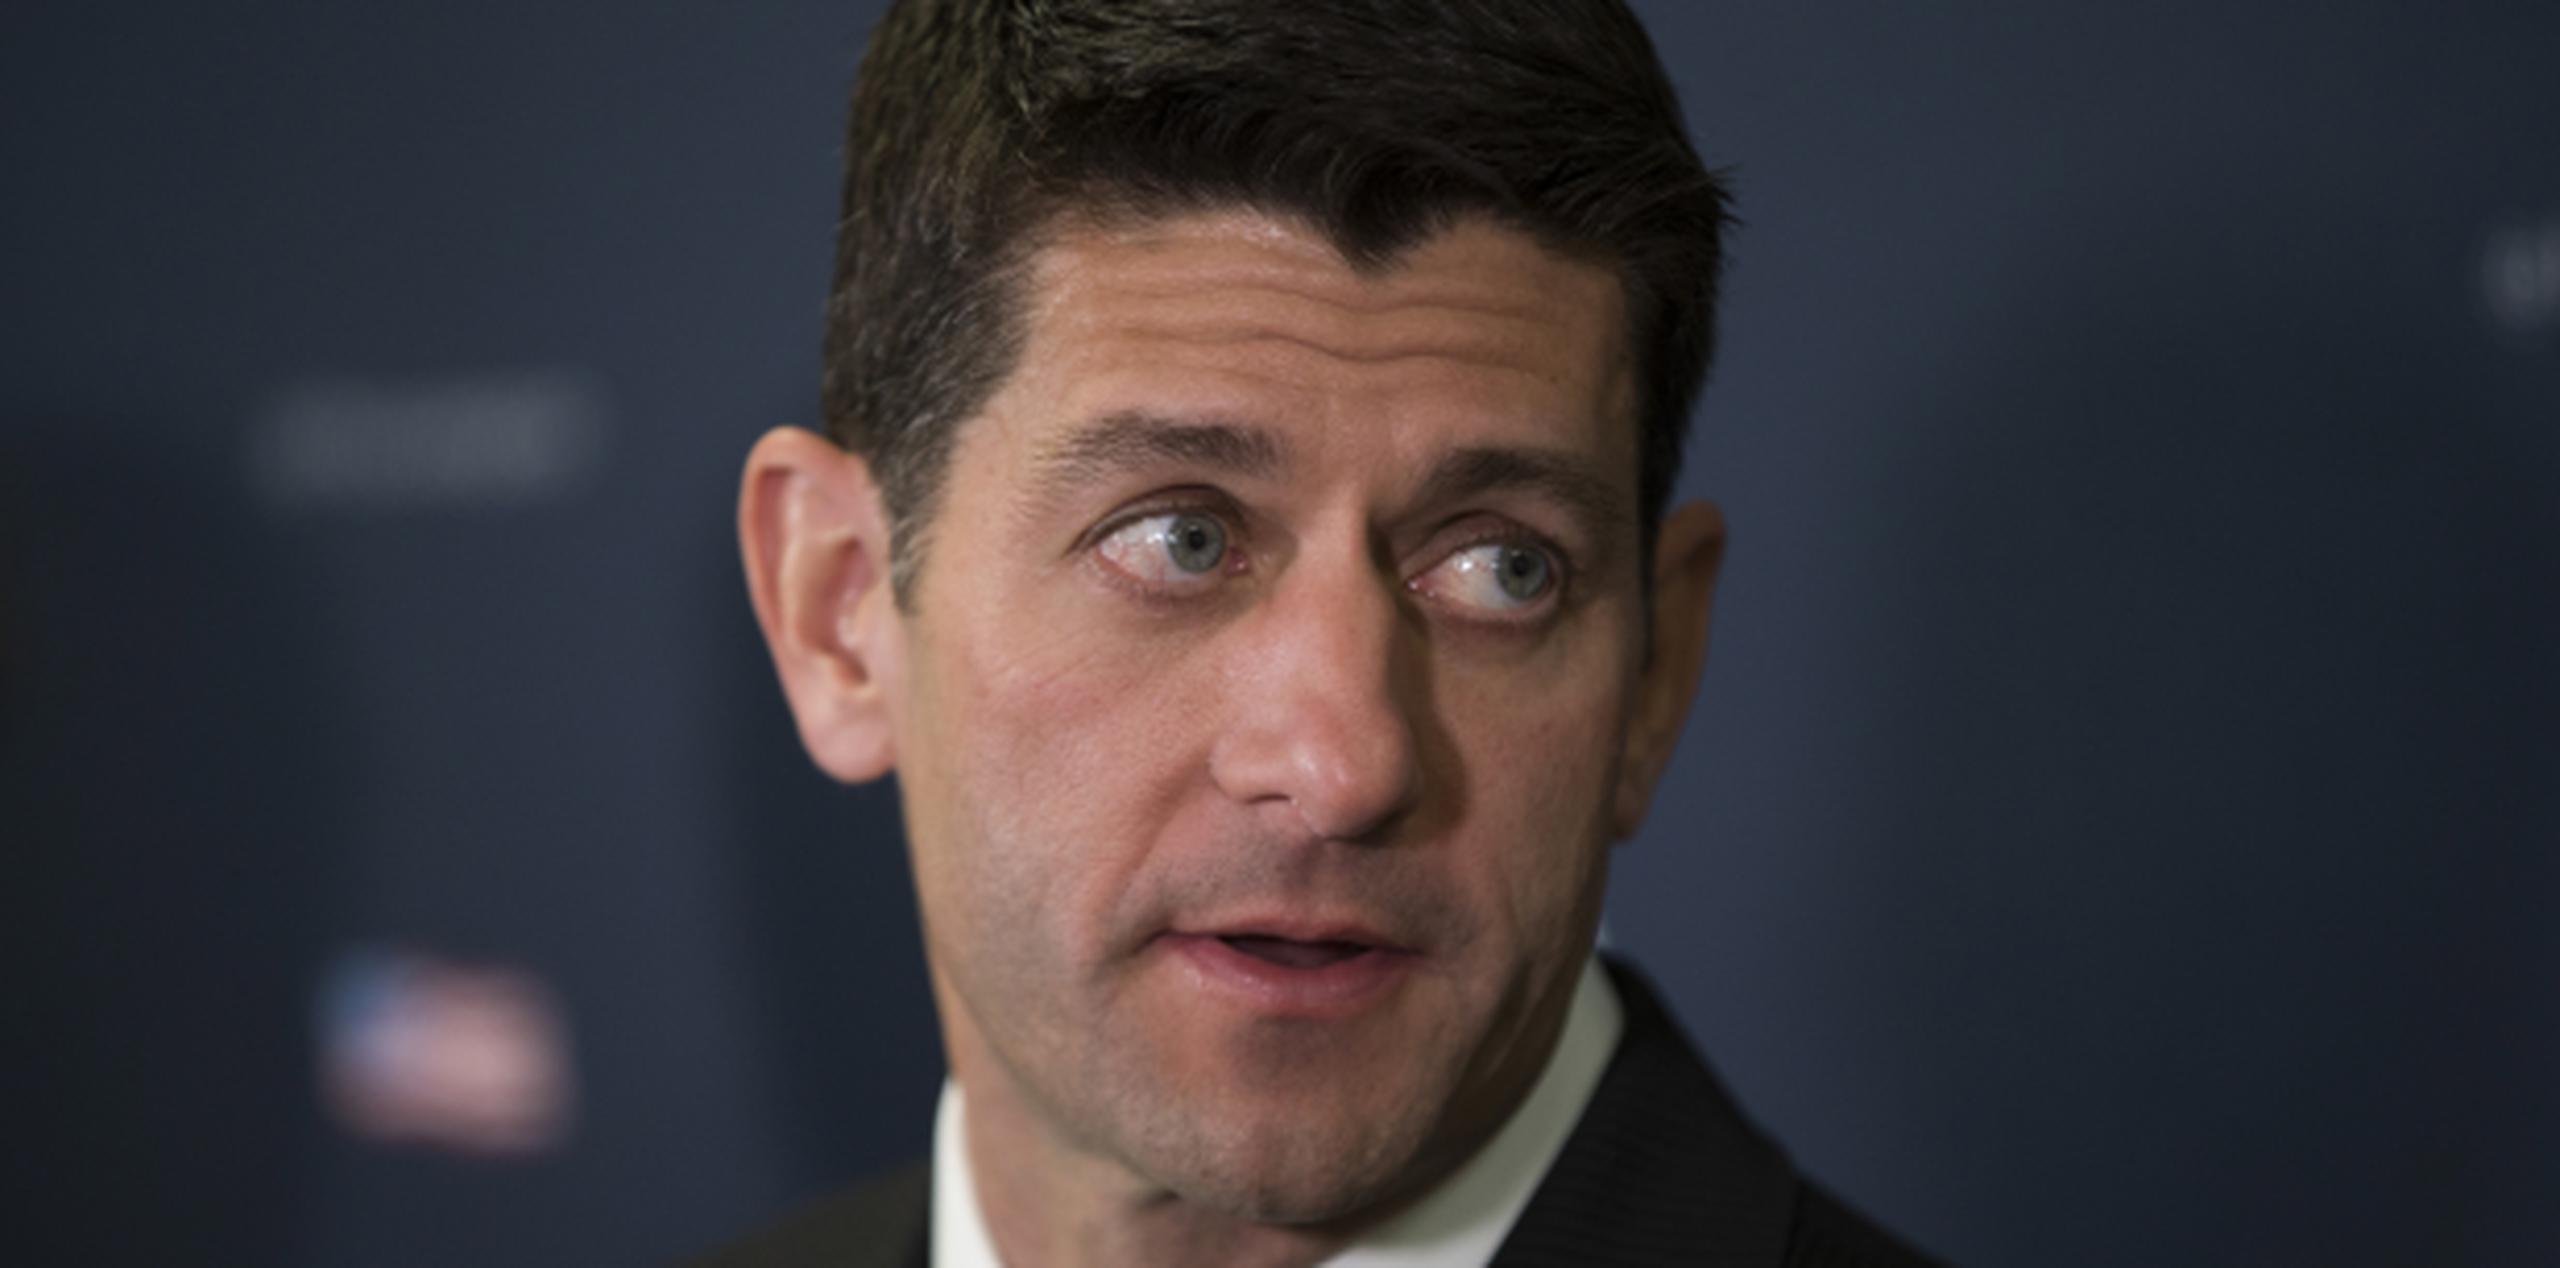 La medida cuenta con respaldo de líderes demócratas y republicanos en el Congreso, incluyendo el presidente de la Cámara federal, Paul Ryan. (AP)